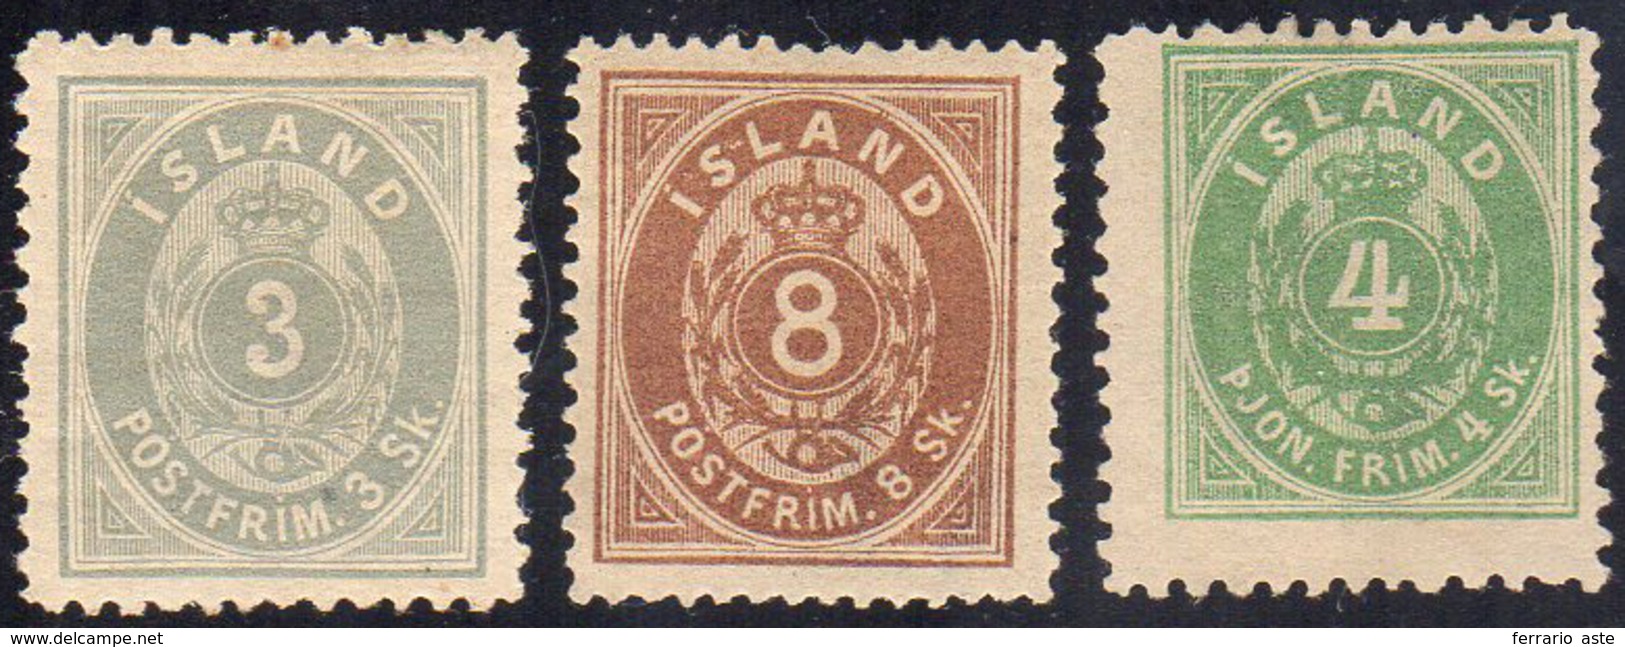 ISLANDA 1873 - 3 S. Grigio, 8 S. Bruno, 4 S. Verde Servizio (2,4,S.1A), Nuovi, Gomma Originale, Perf... - Europe (Other)